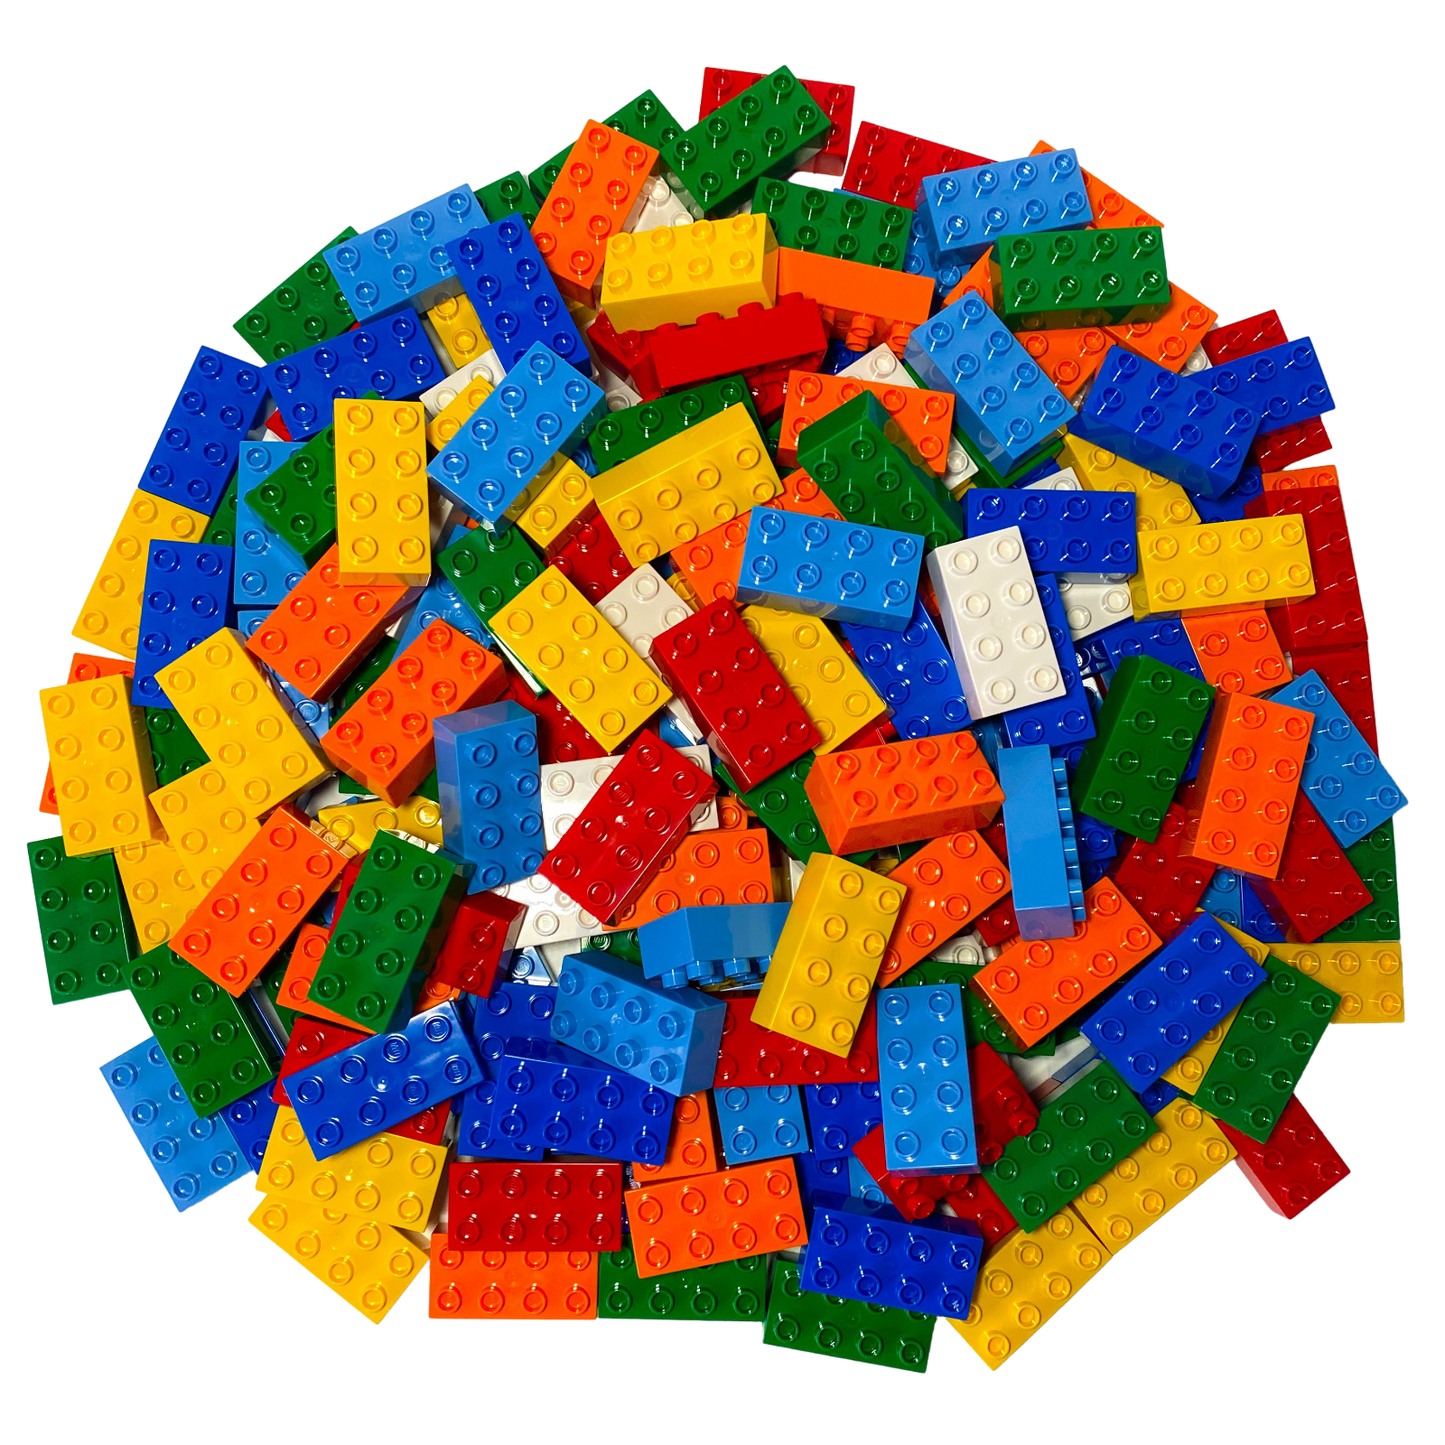 Blocs de construction en briques LEGO® DUPLO® 2x4 blocs de construction de base colorés mélangés - 3011 NOUVEAU ! Quantité 50x 